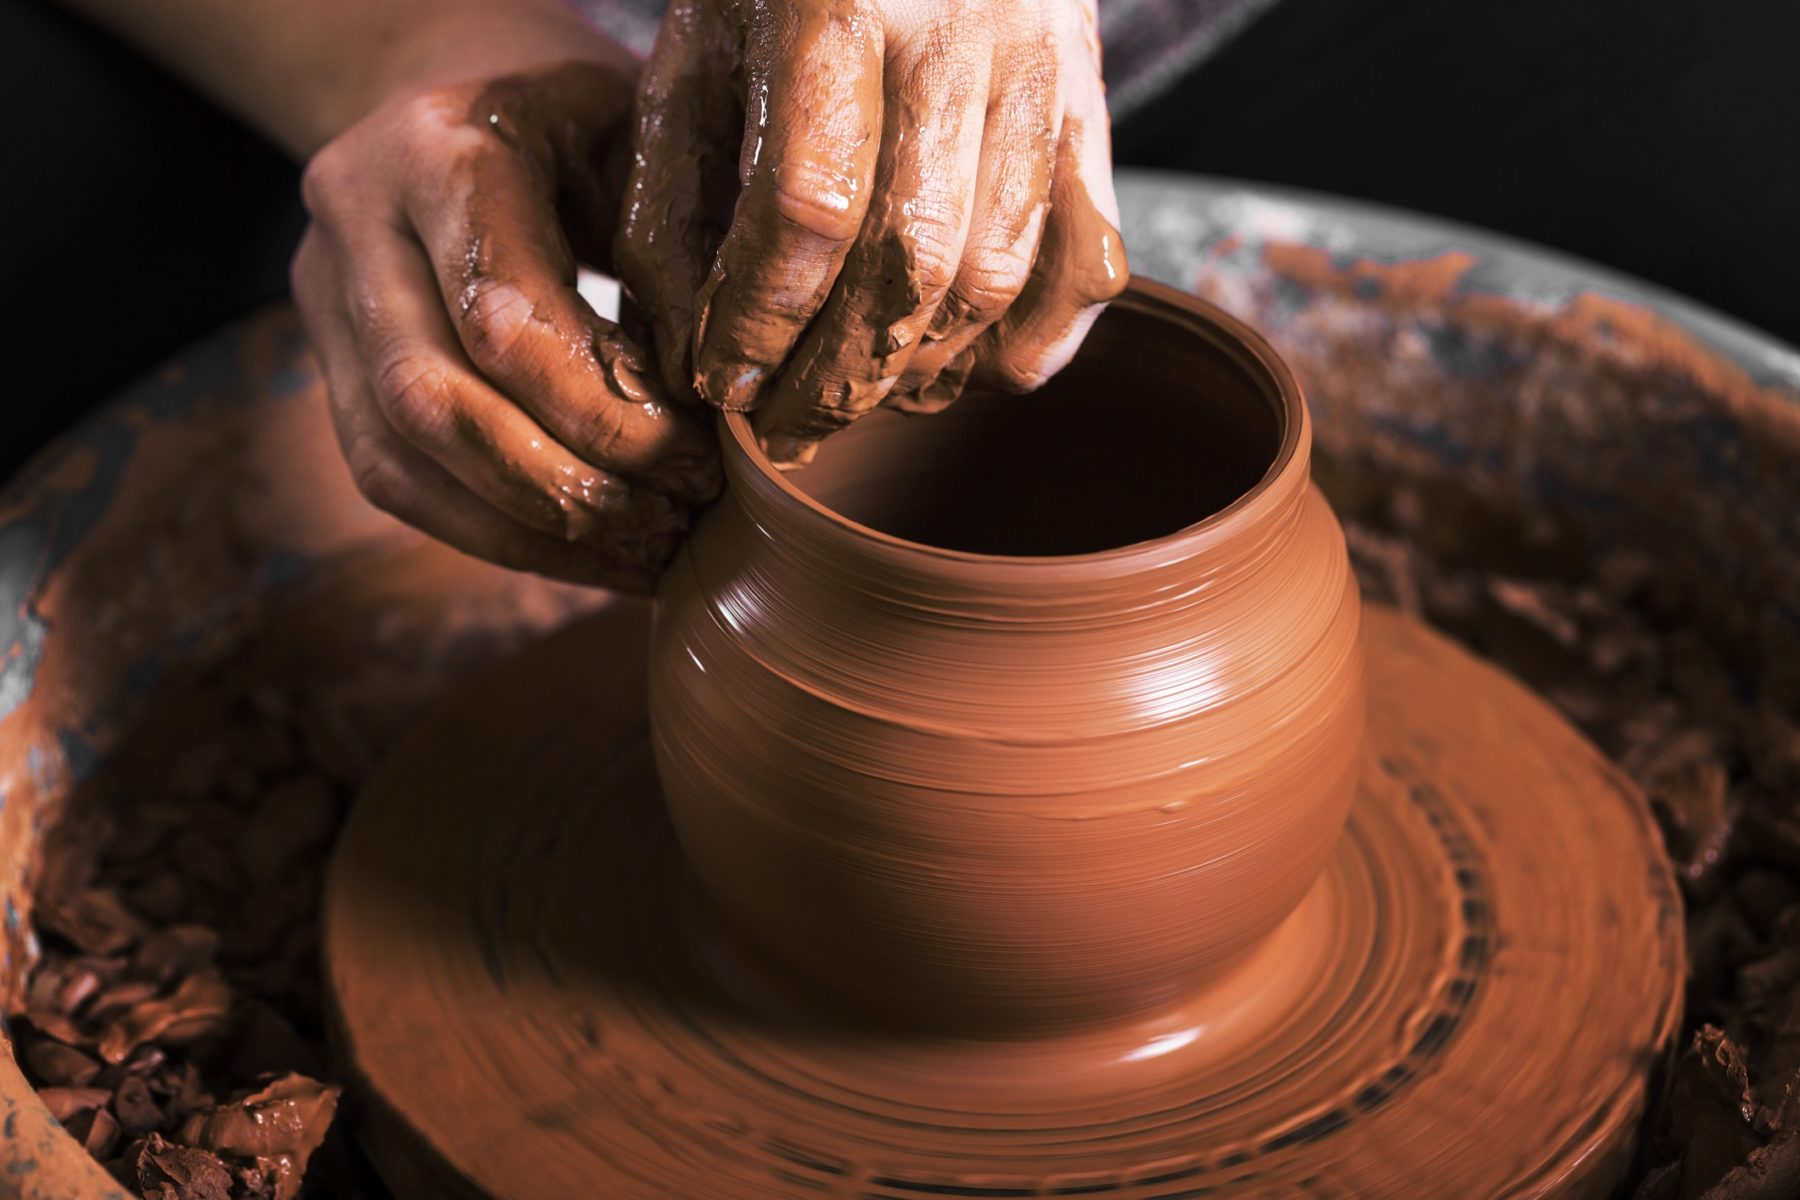 Les mains d'un potier fabriquant un vase